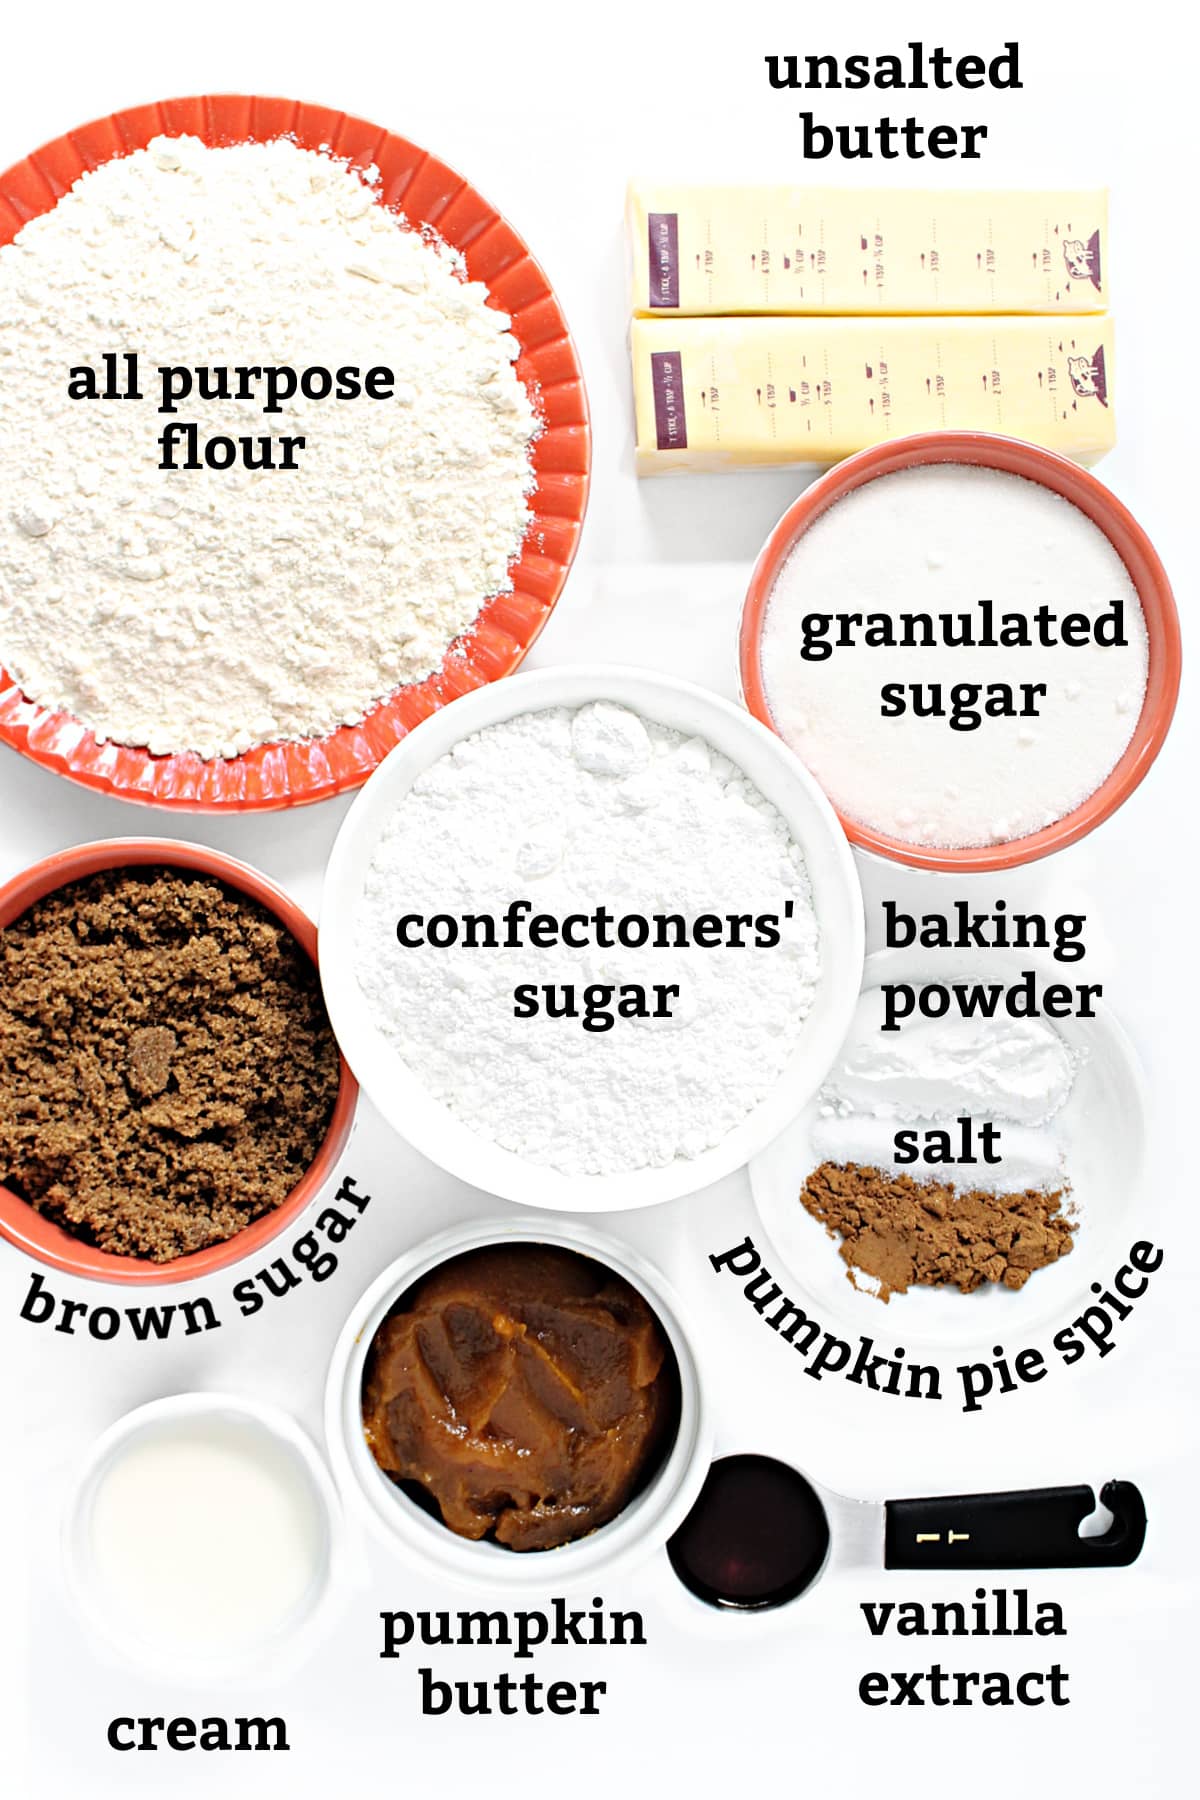 Ingredients: flour, butter, granulated/brown/confectioners sugar, baking powder, salt, pie spice, cream, vanilla, pumpkin butter.